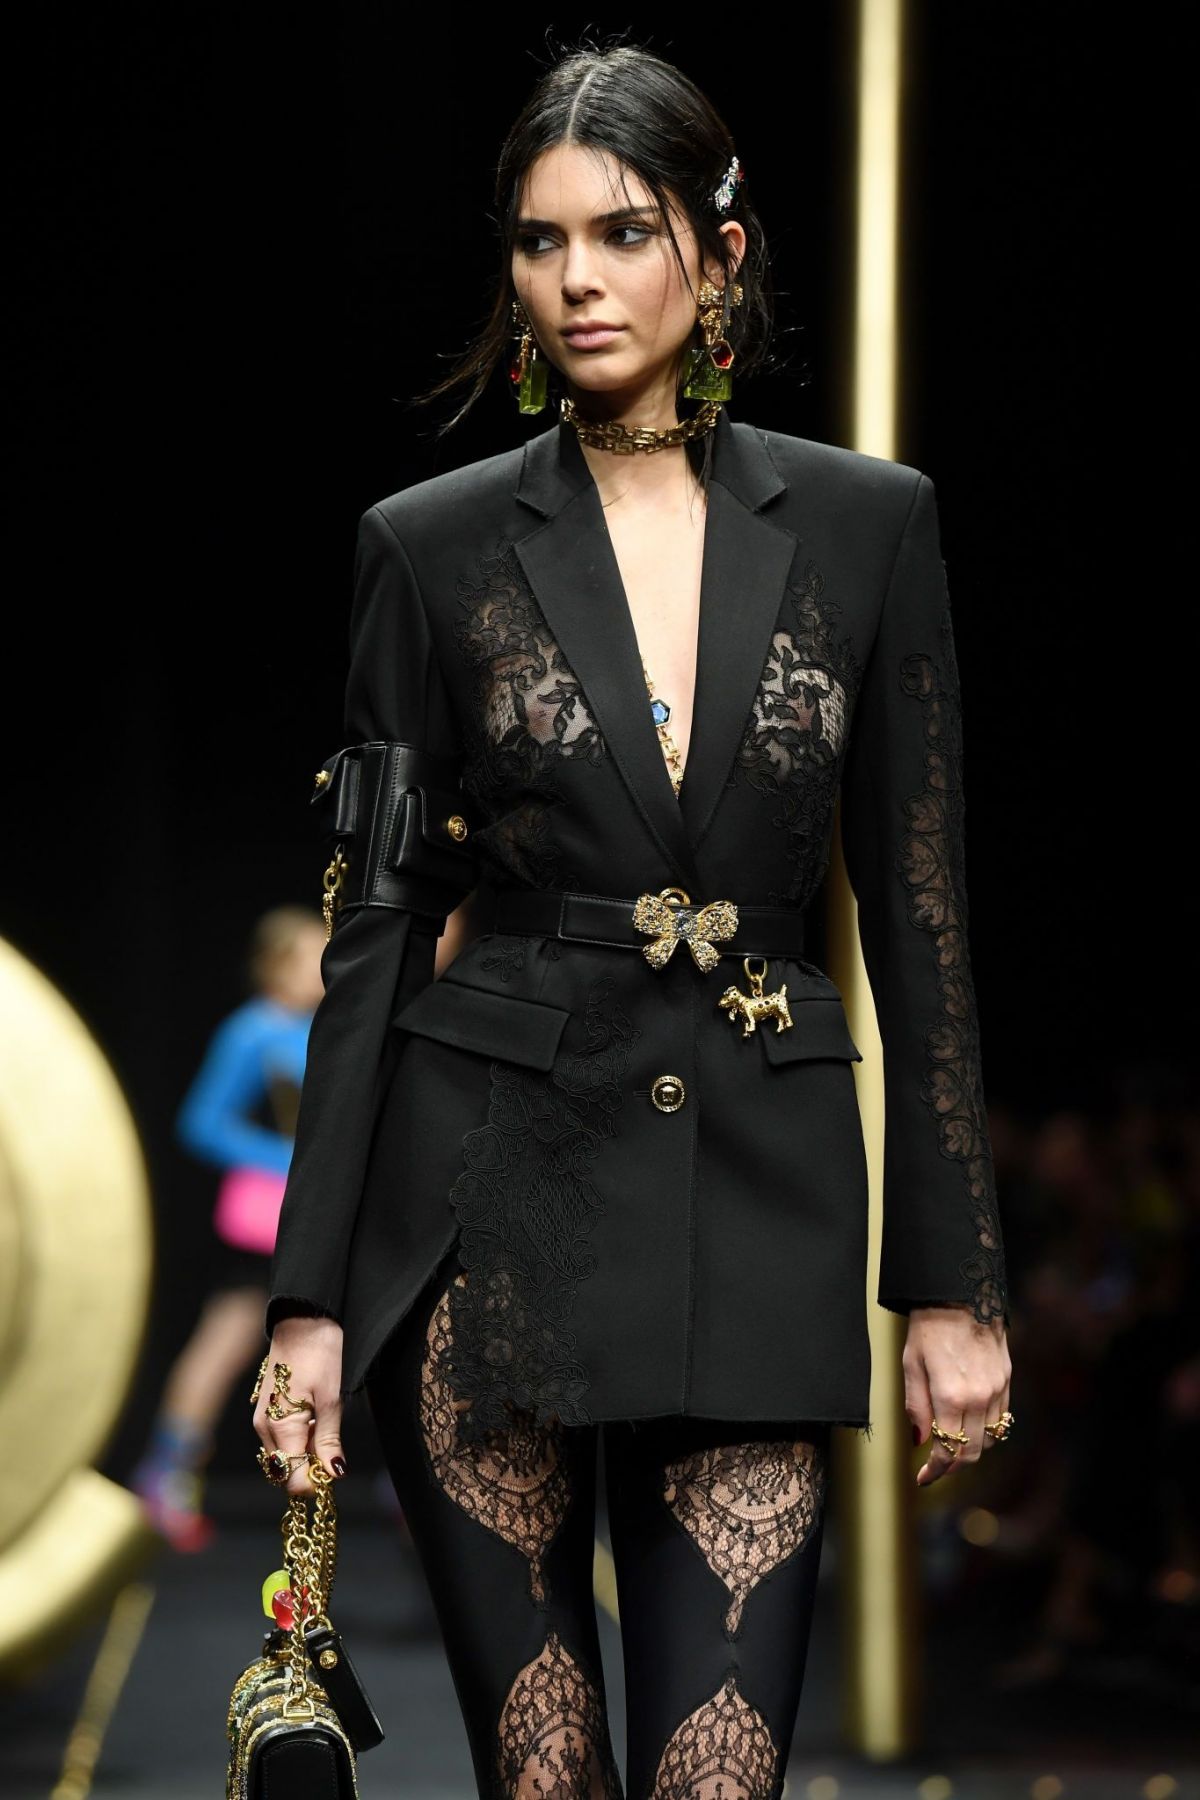 KENDALL JENNER at Versace Runway Show at Milan Fashion Week 02/22/2019